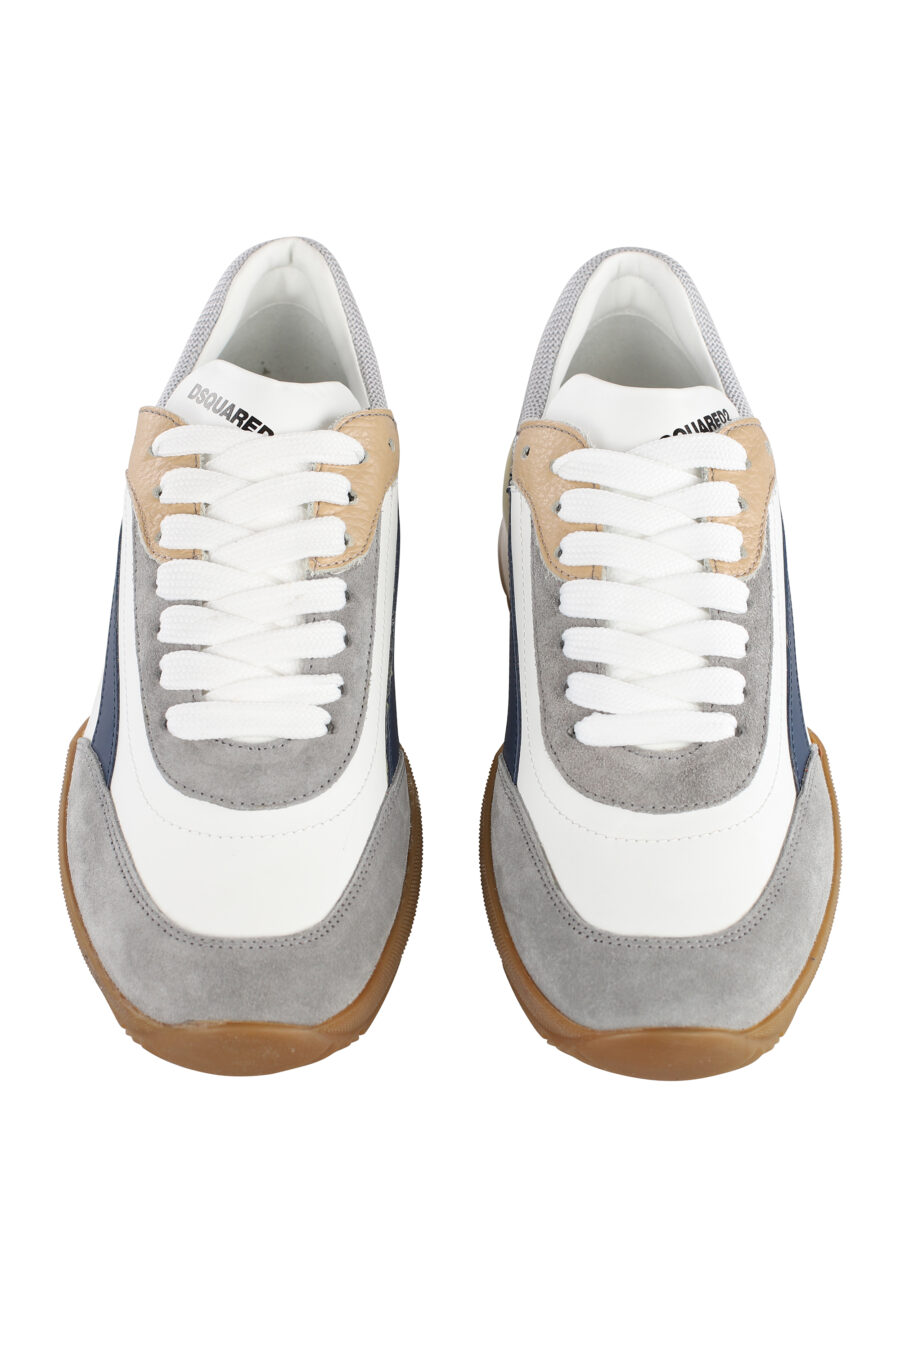 Zapatillas blancas y grises con detalles multicolor y suela marrón - IMG 7103